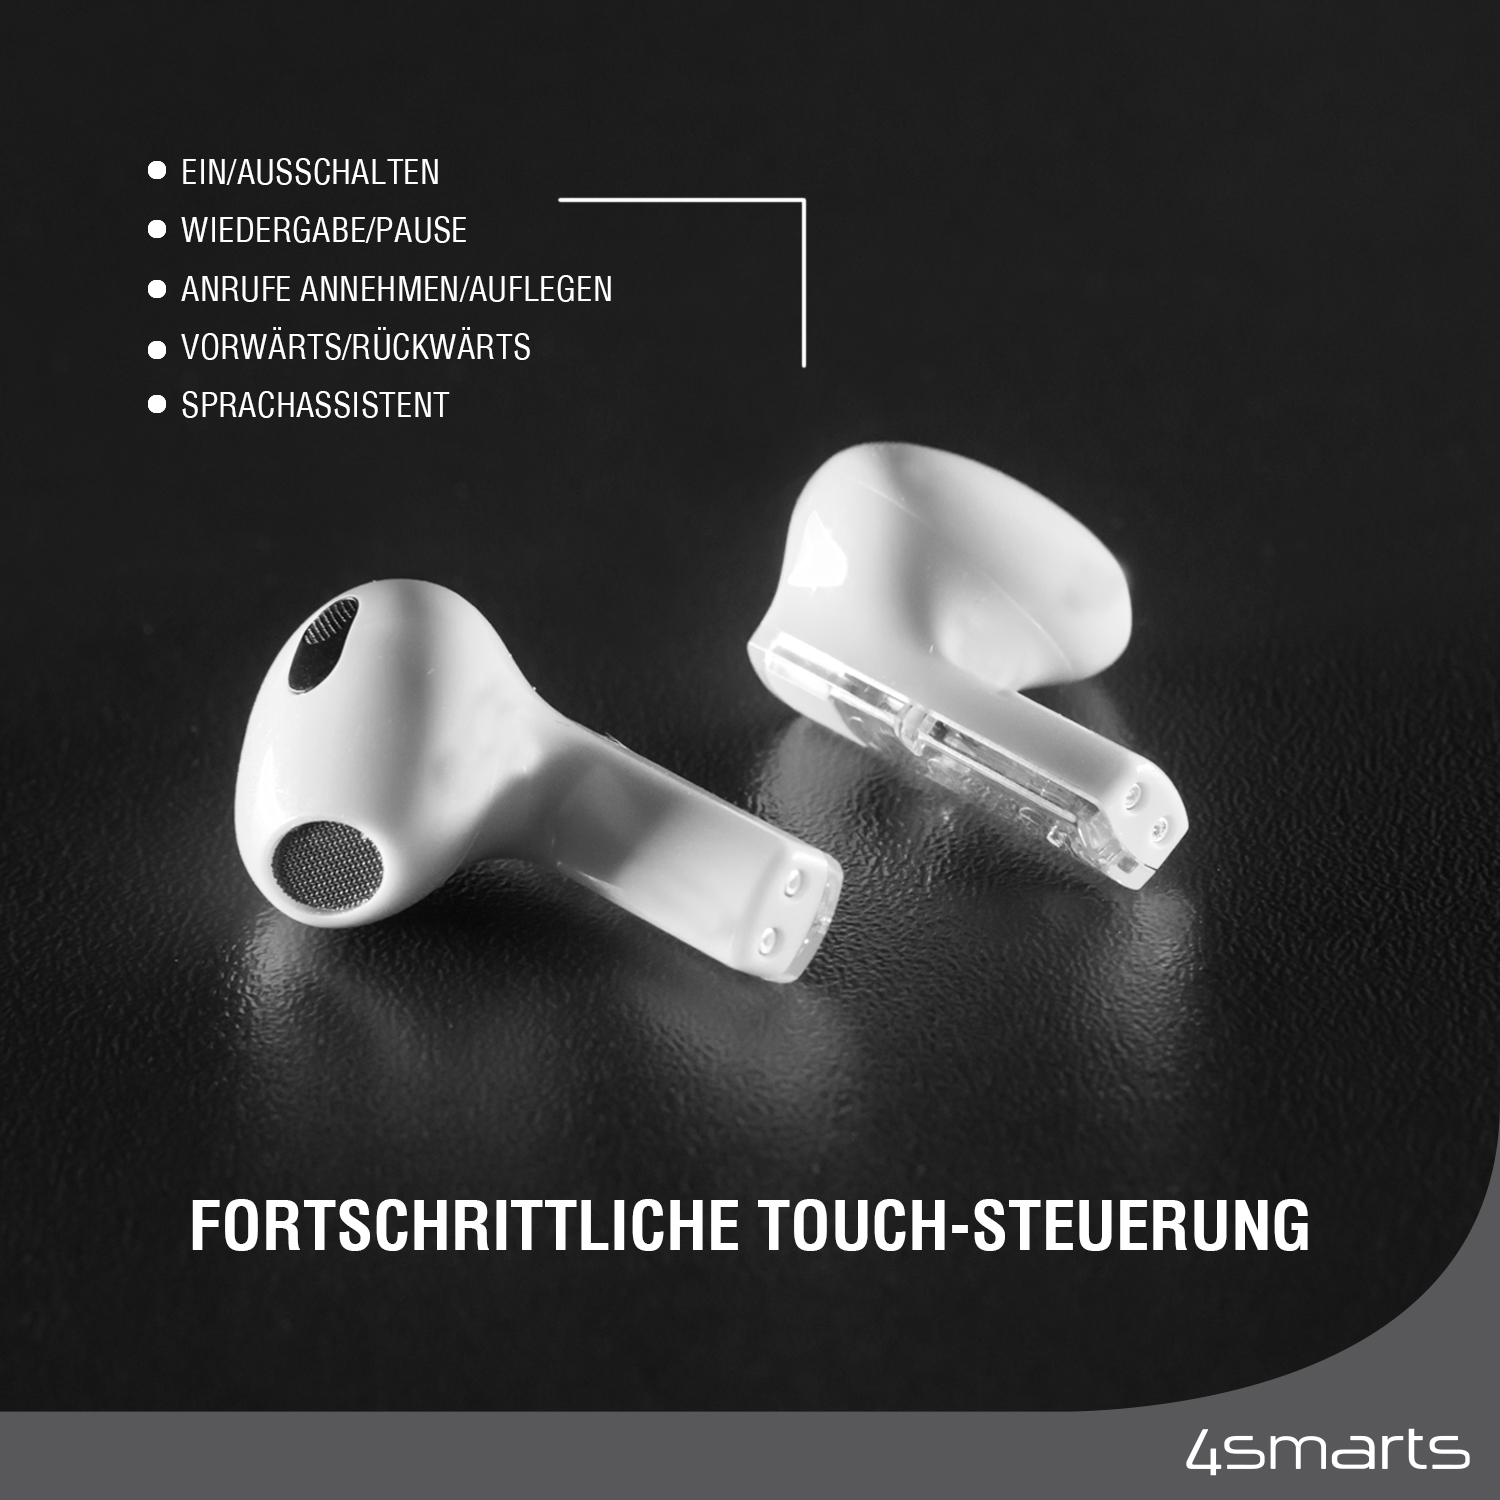 Diese Bluetooth in ear Kopfhörer haben eine fortschrittliche Touch-Steuerung.